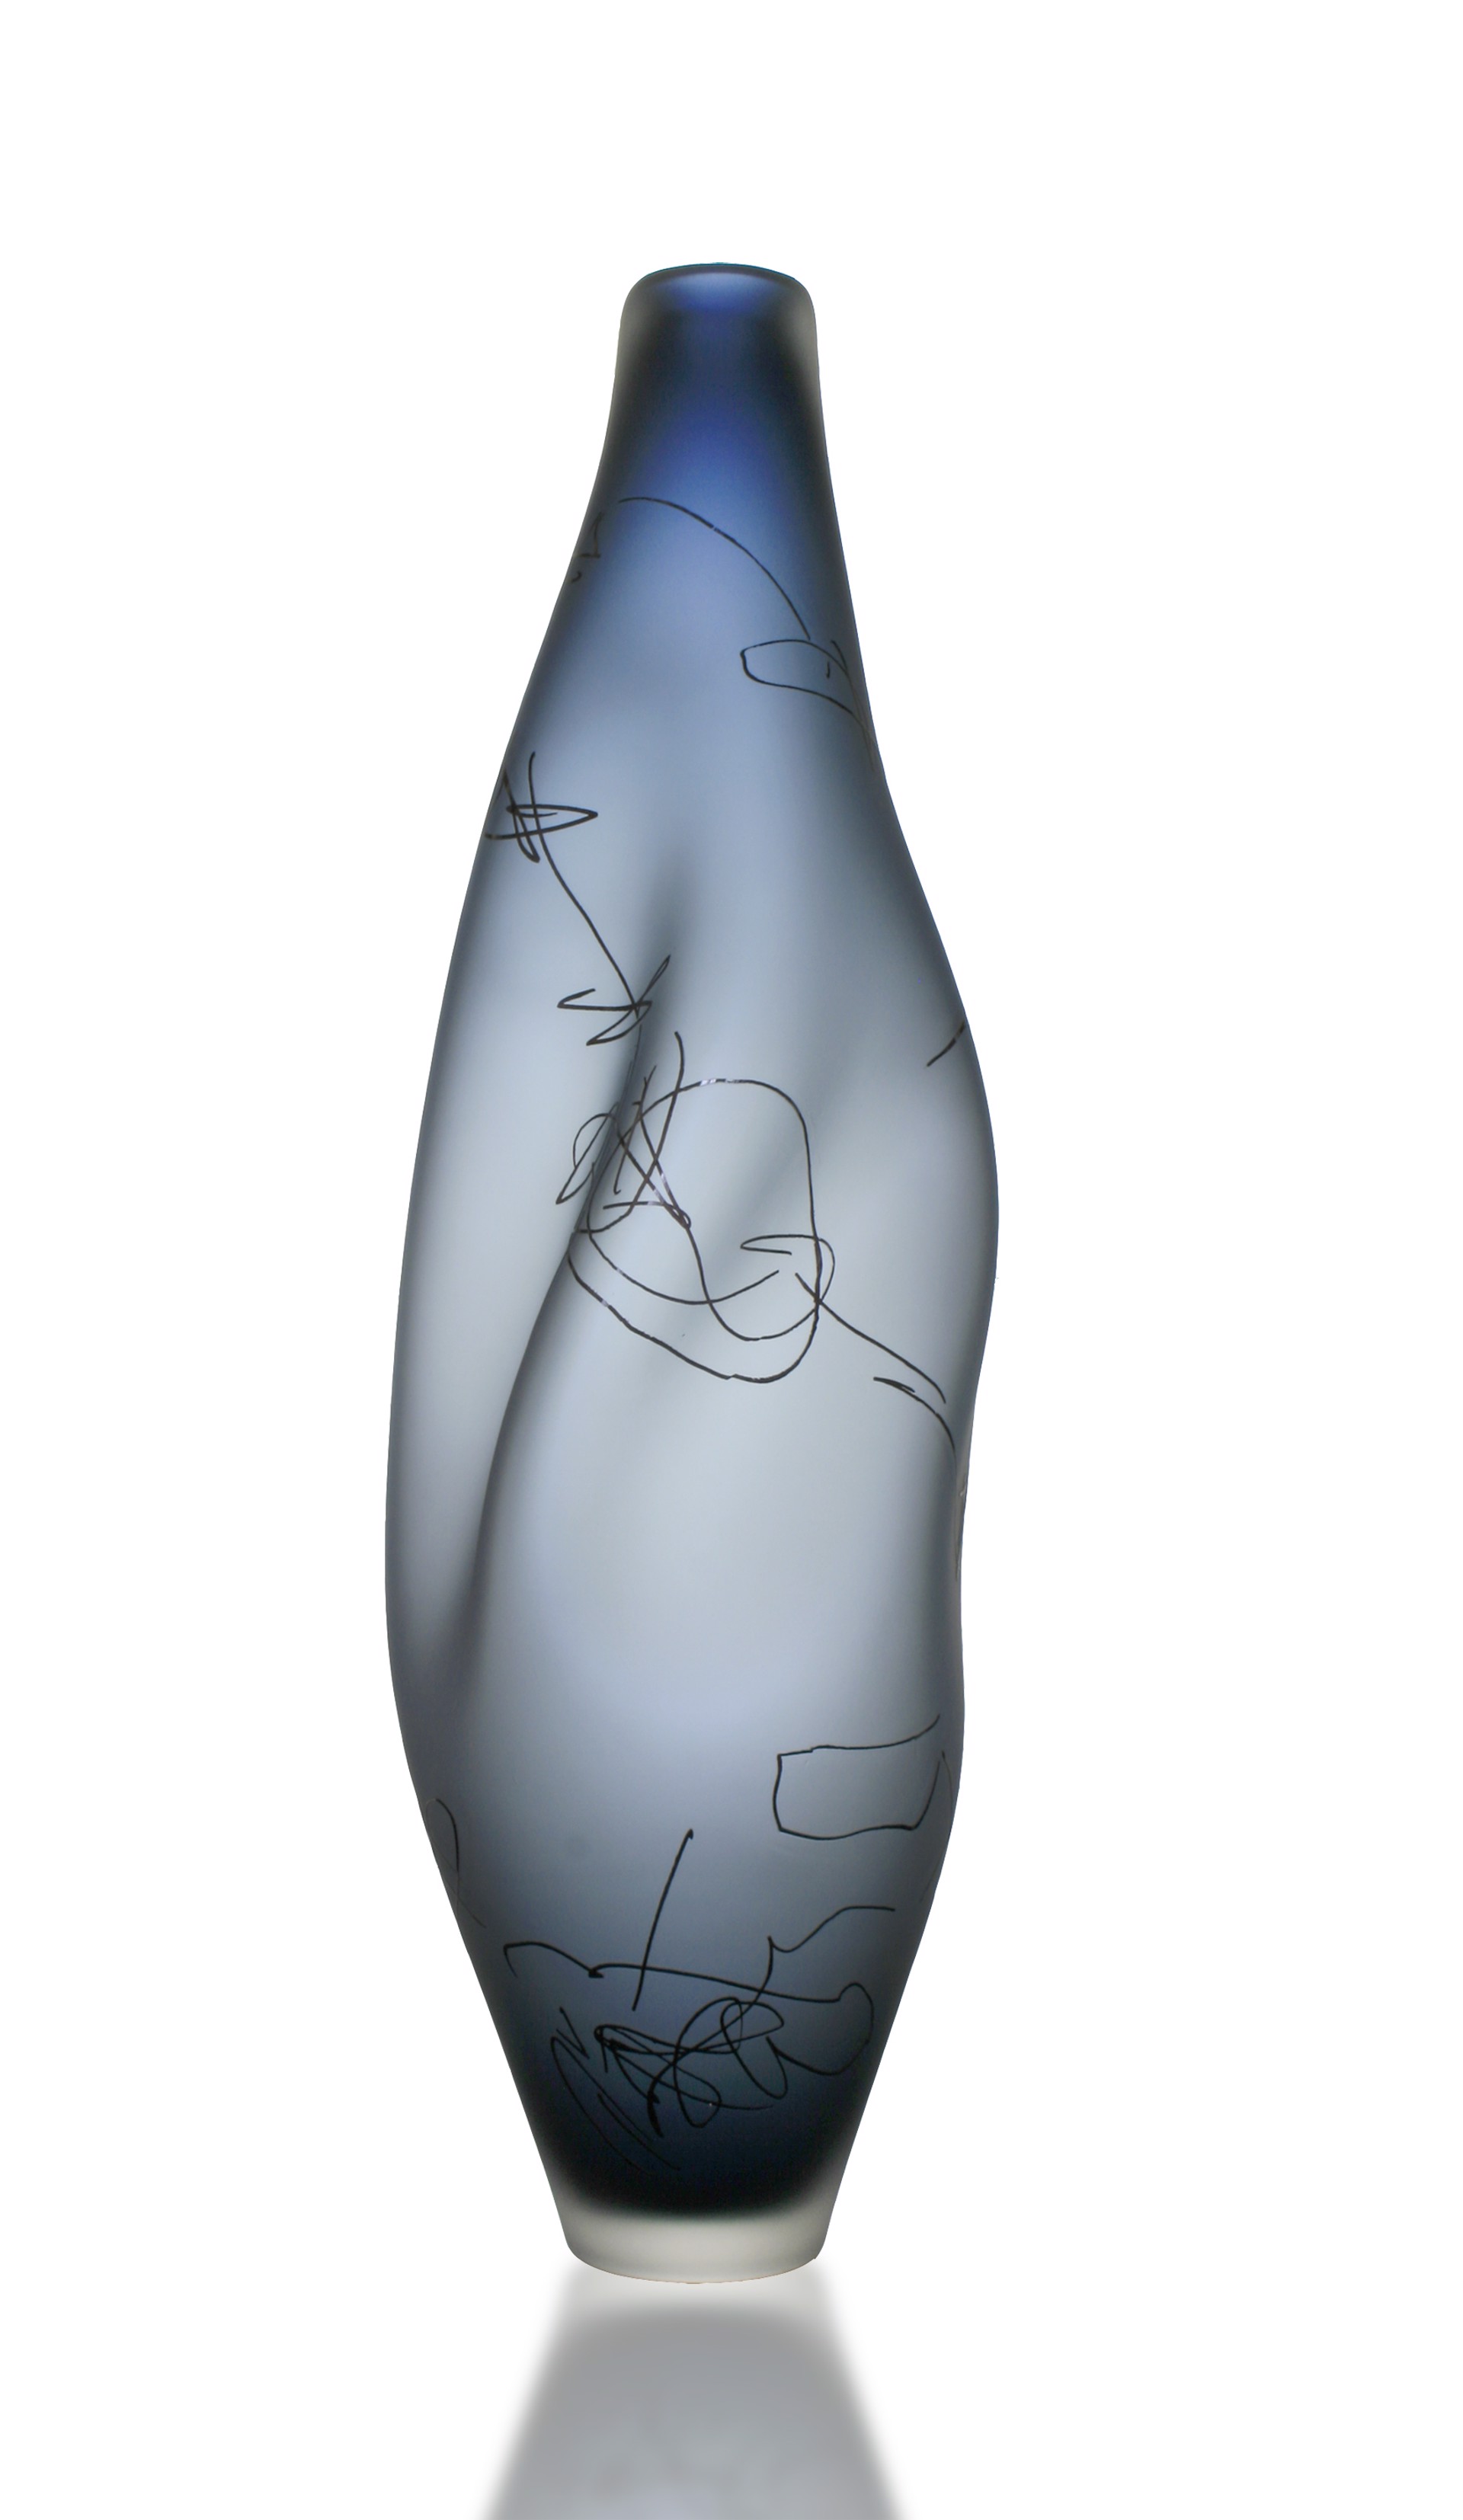 Steel Blue Scribe Vase by The Goodman Studio